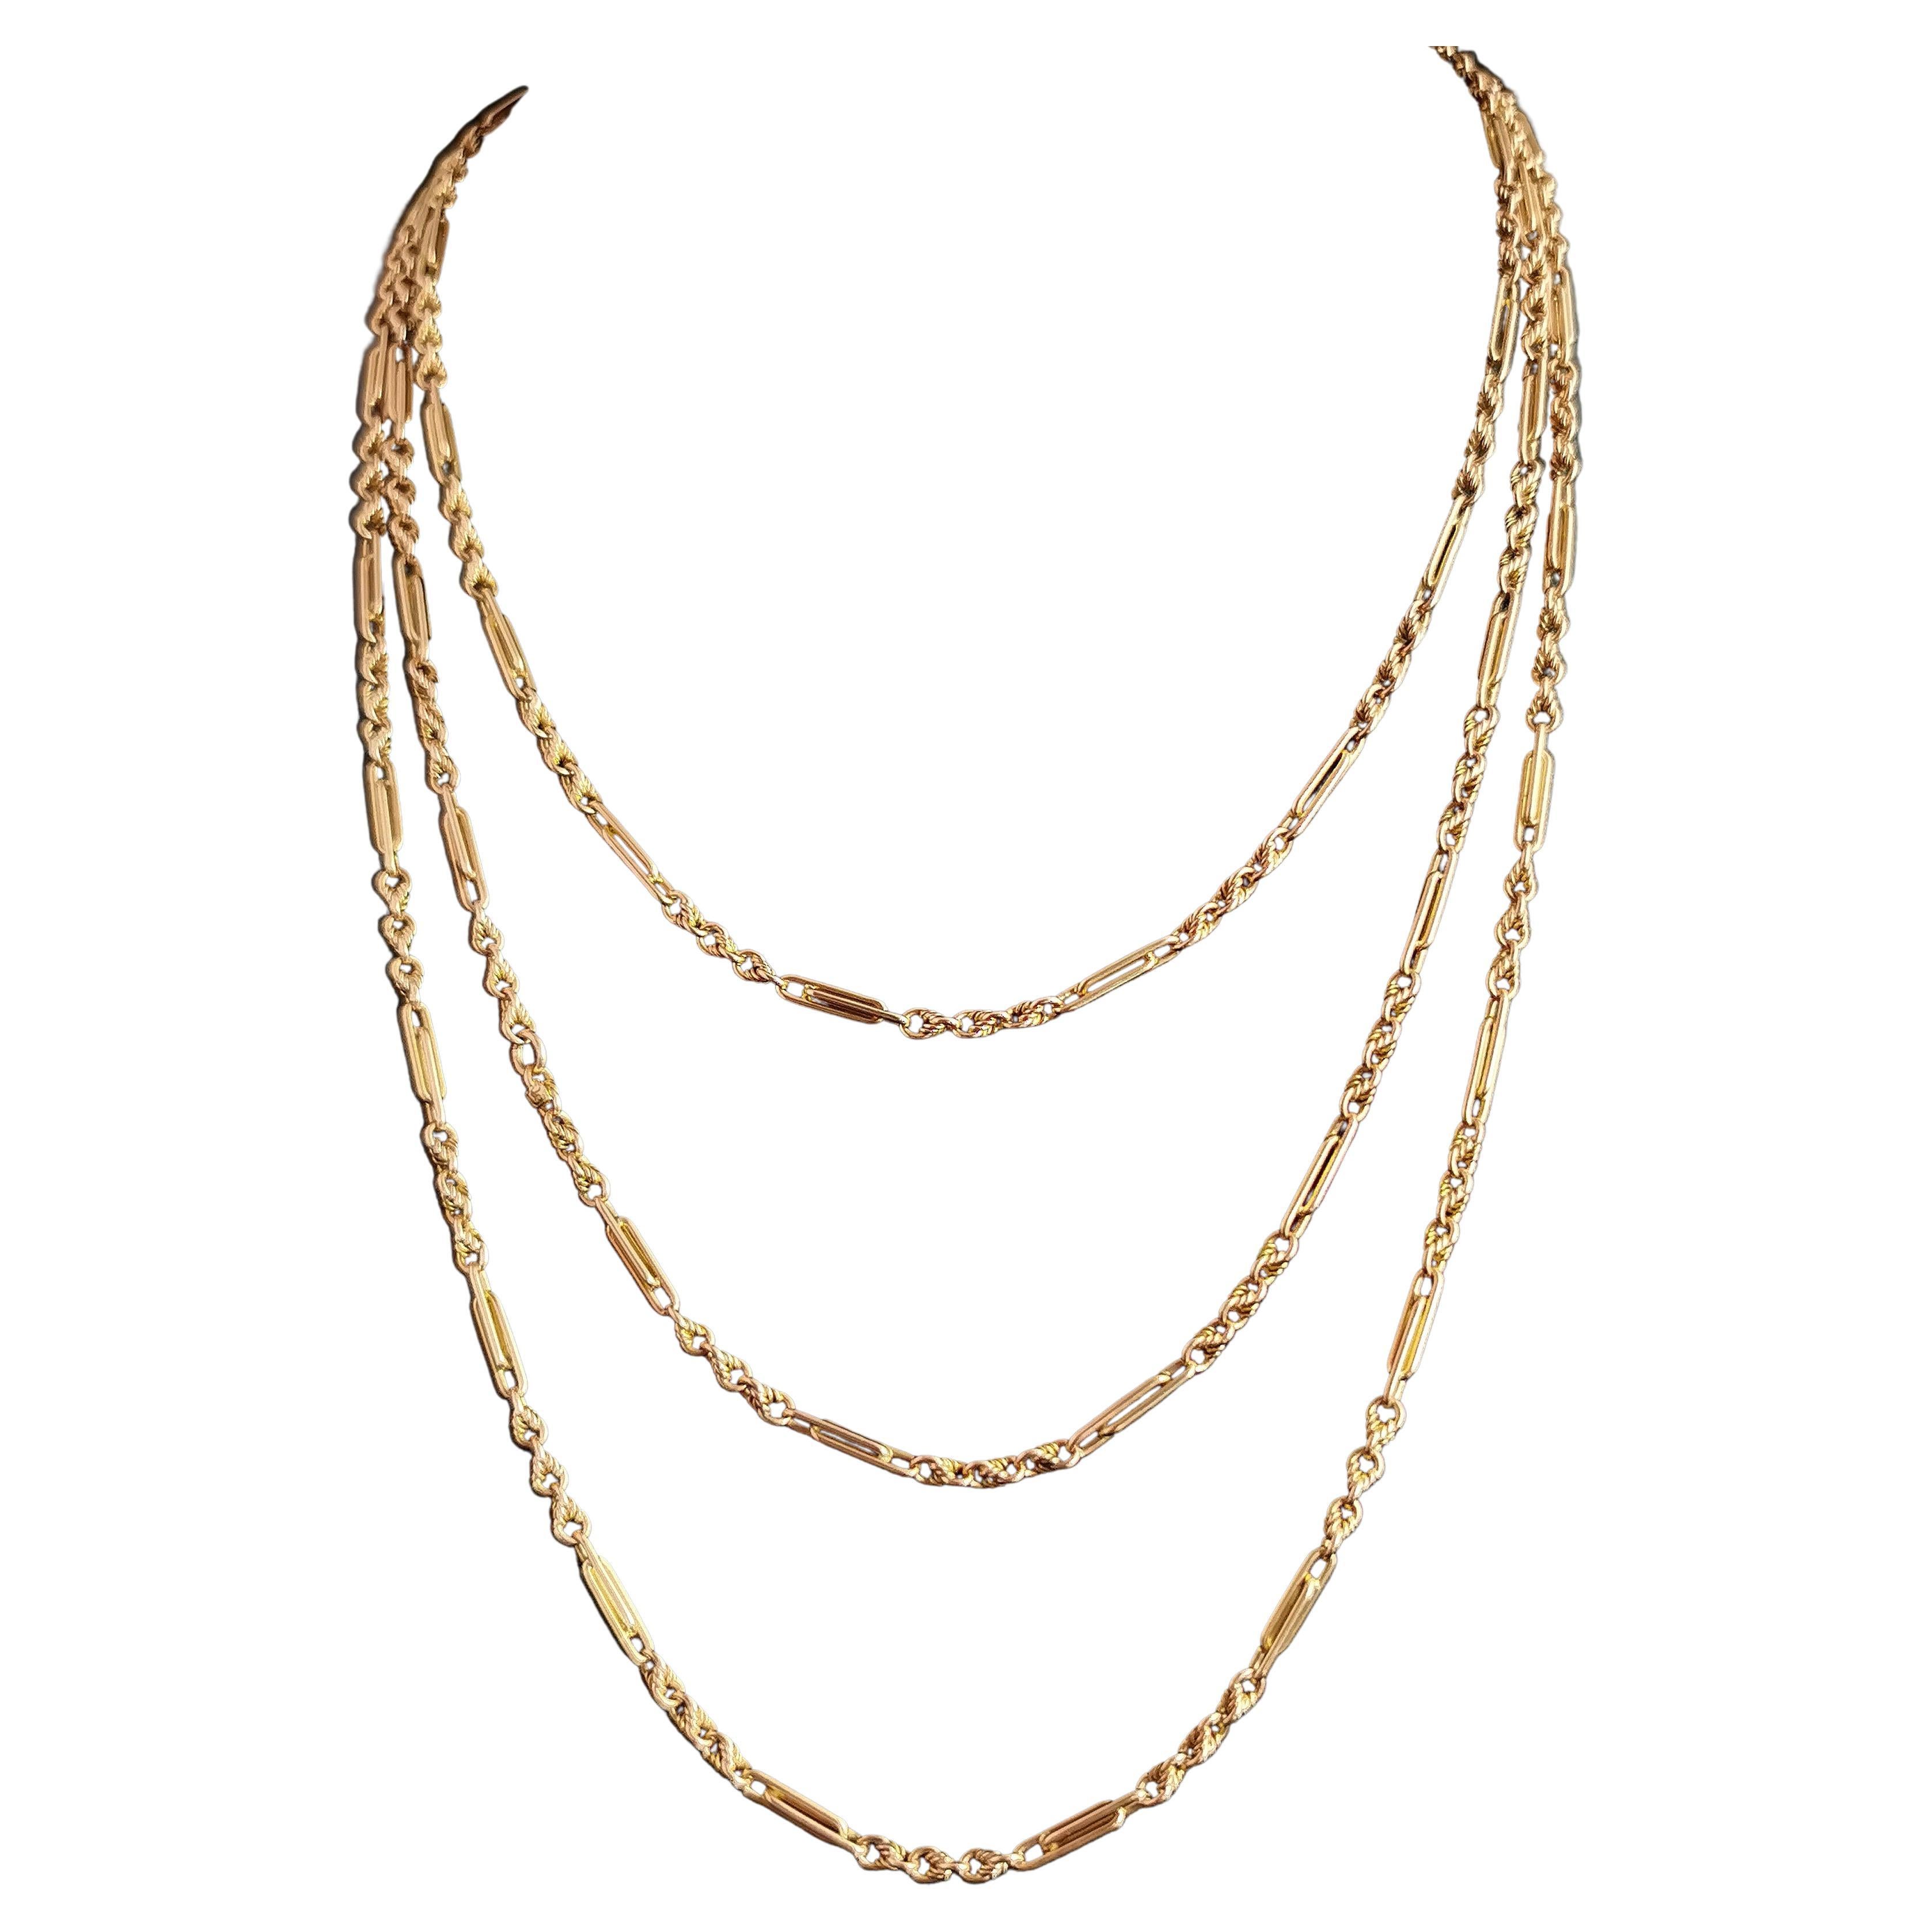 Antique Victorian 15k Gold Longuard Chain, Fancy Link Necklace